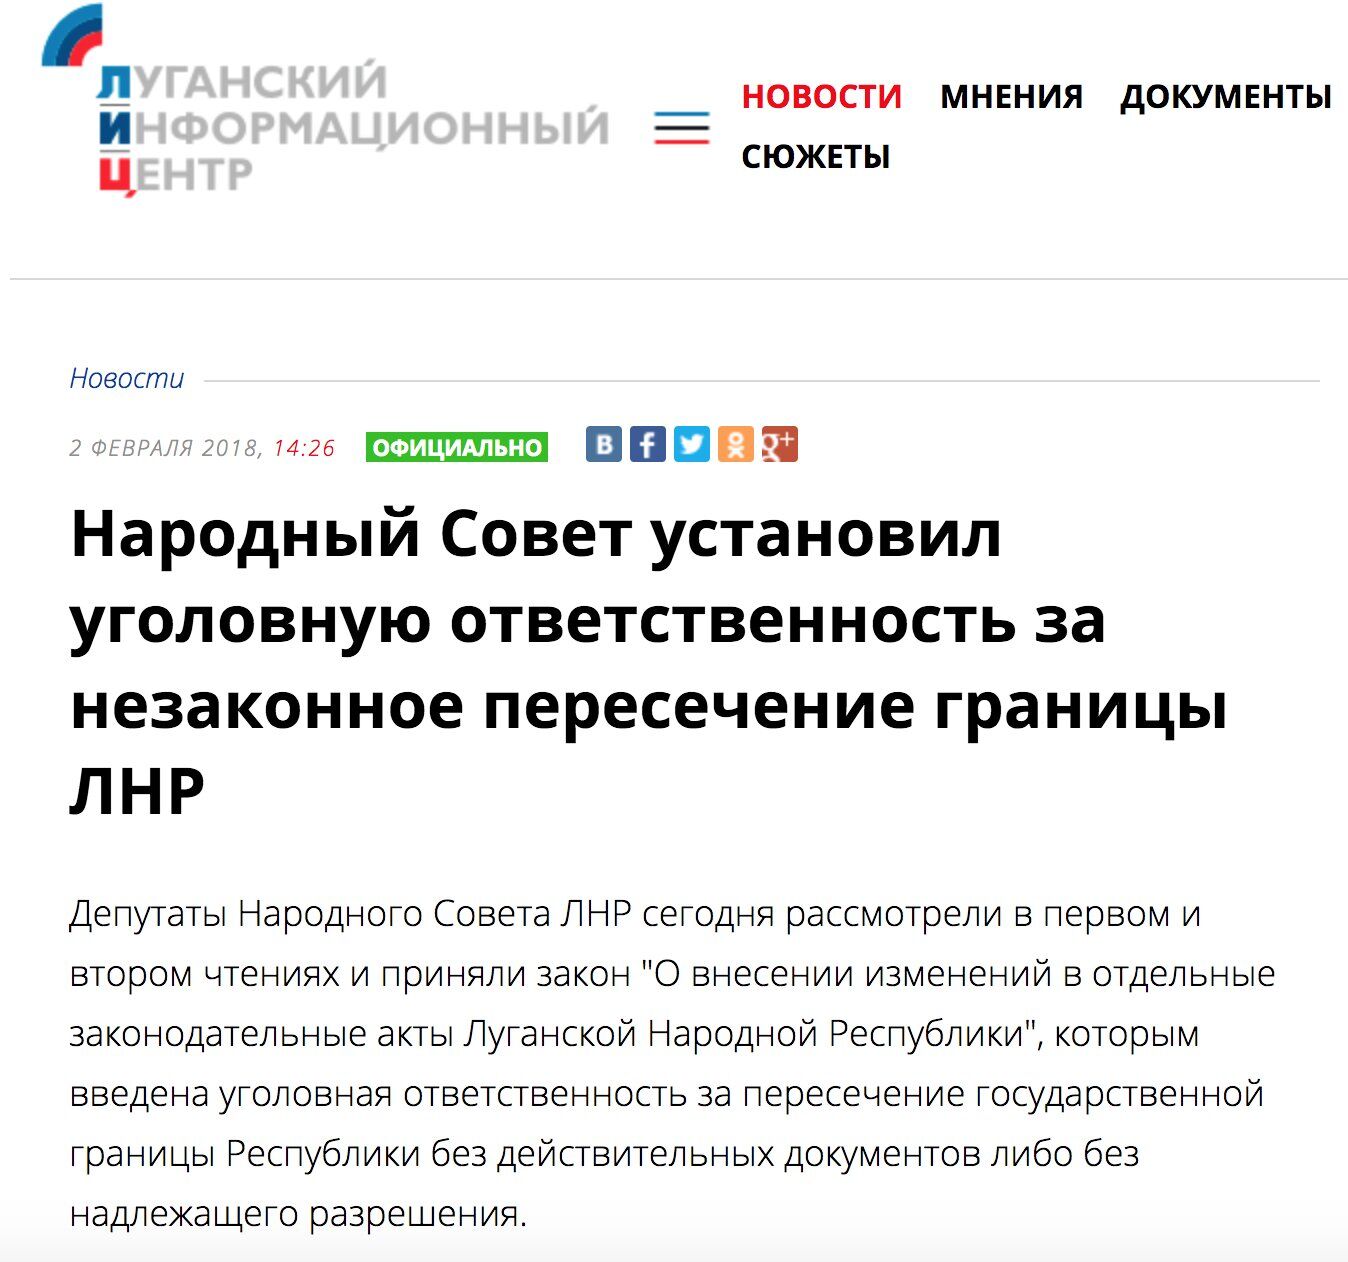 "Кордон" на замку: жителям "ЛНР" ввели покарання за поїздки в "ДНР"